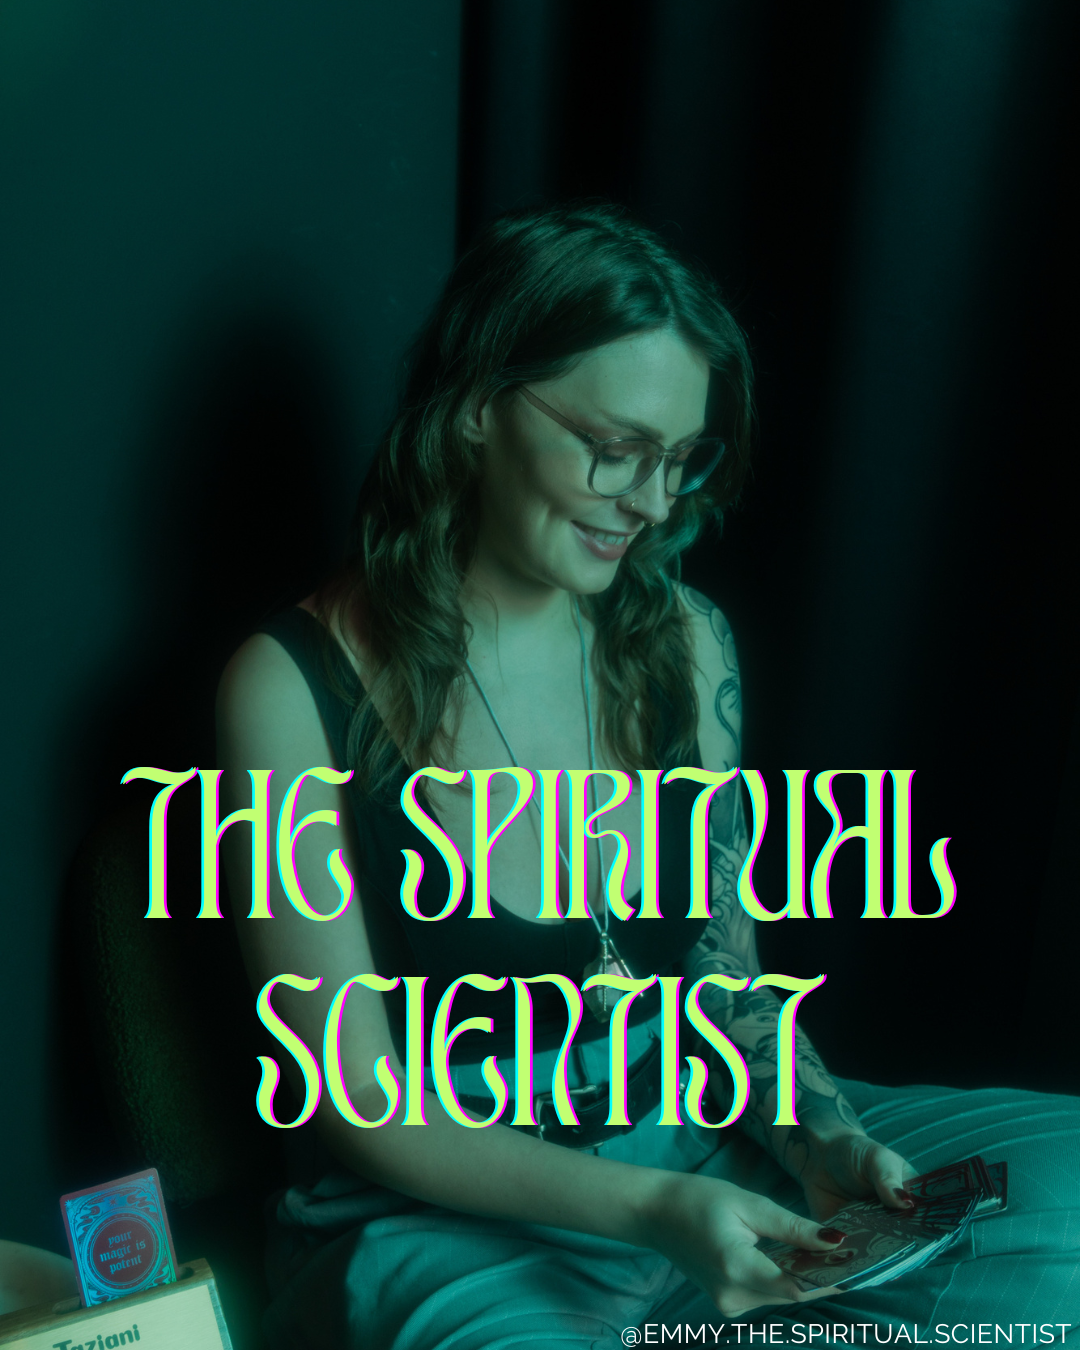 THE SPIRITUAL SCIENTIST